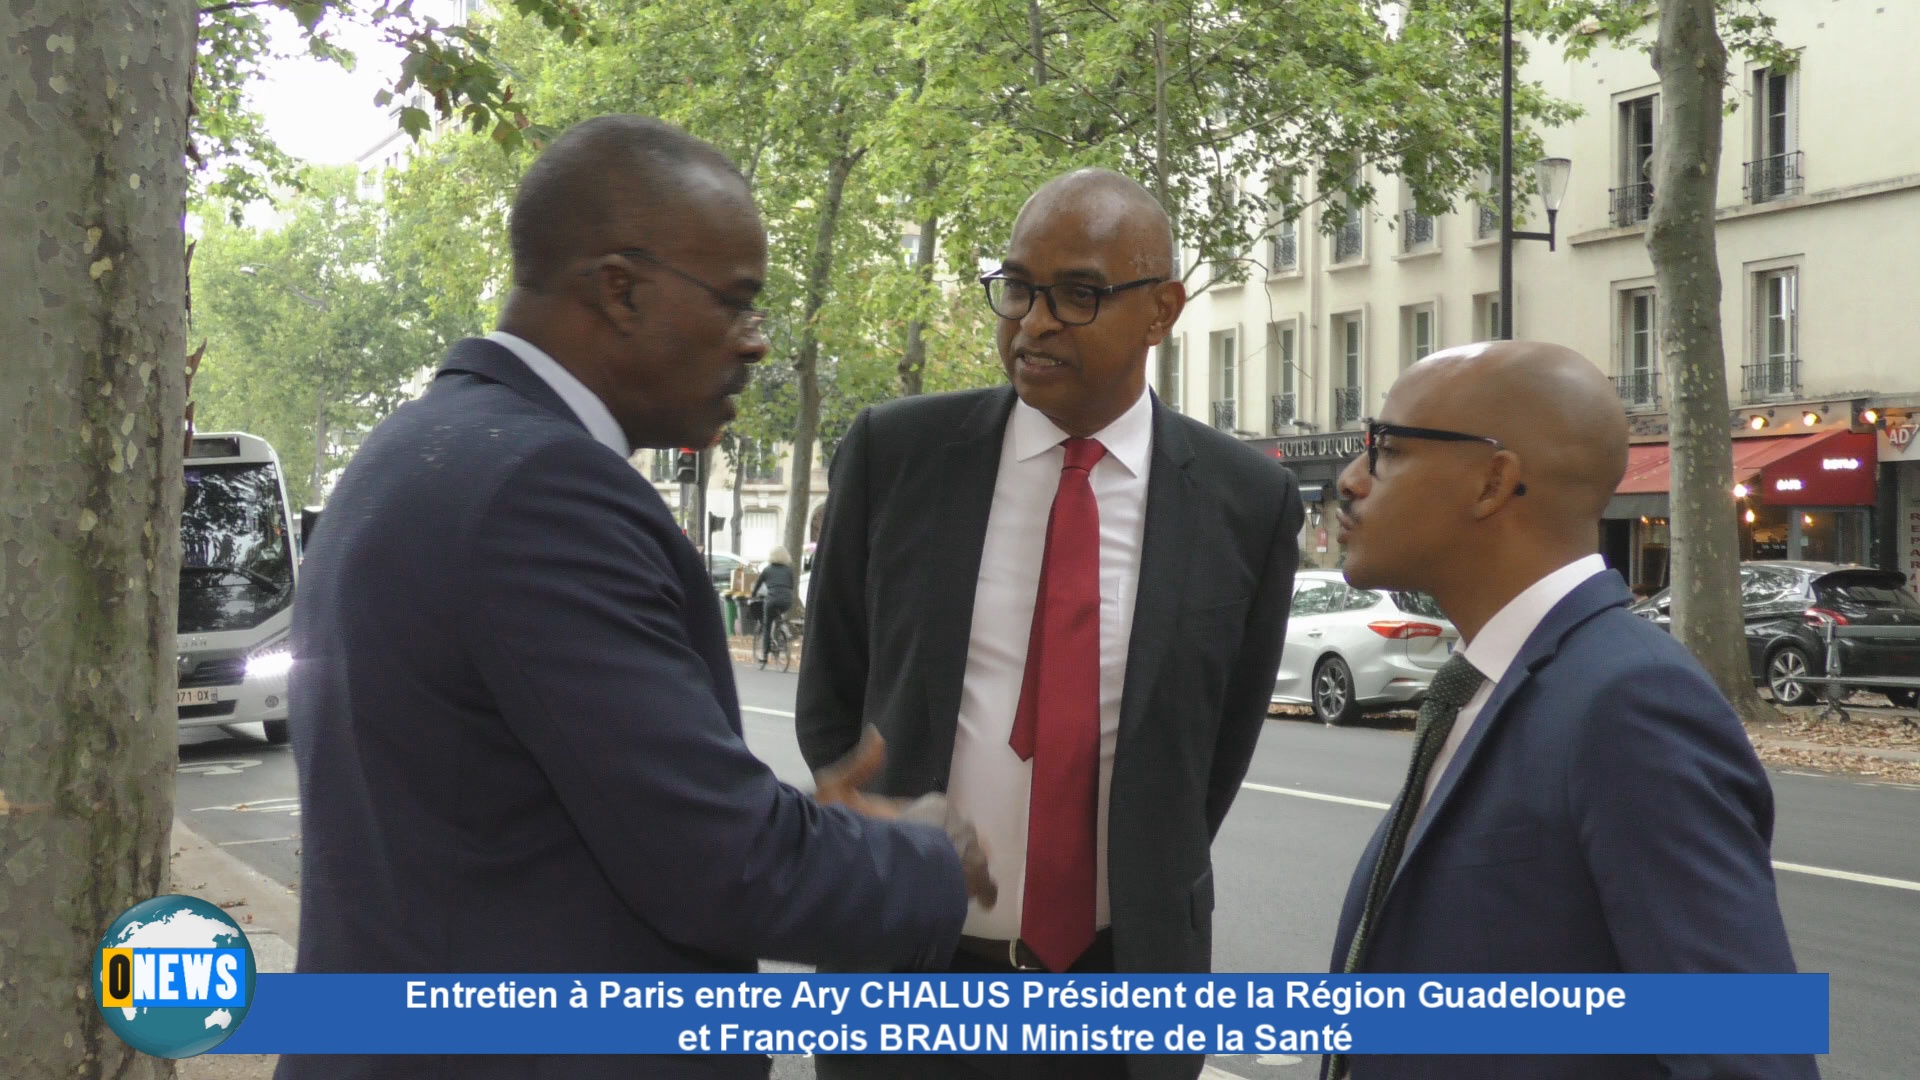 [Vidéo] Entretien entre Ary CHALUS Président de la Région Guadeloupe et François BRAUN Ministre de la Santé